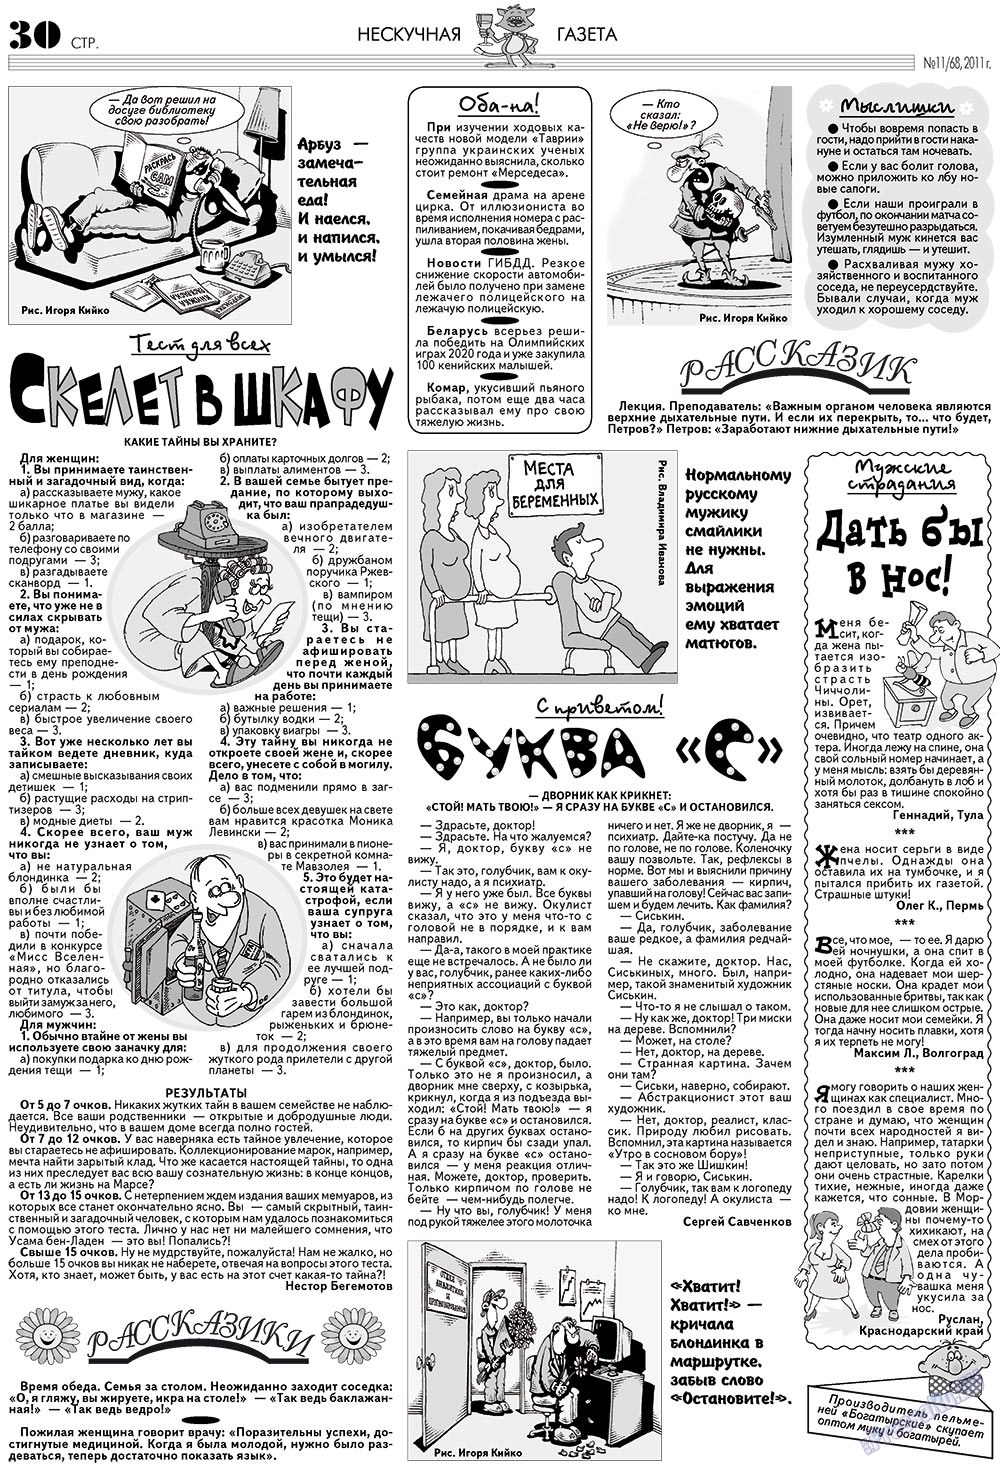 Нескучная газета (журнал). 2011 год, номер 11, стр. 26